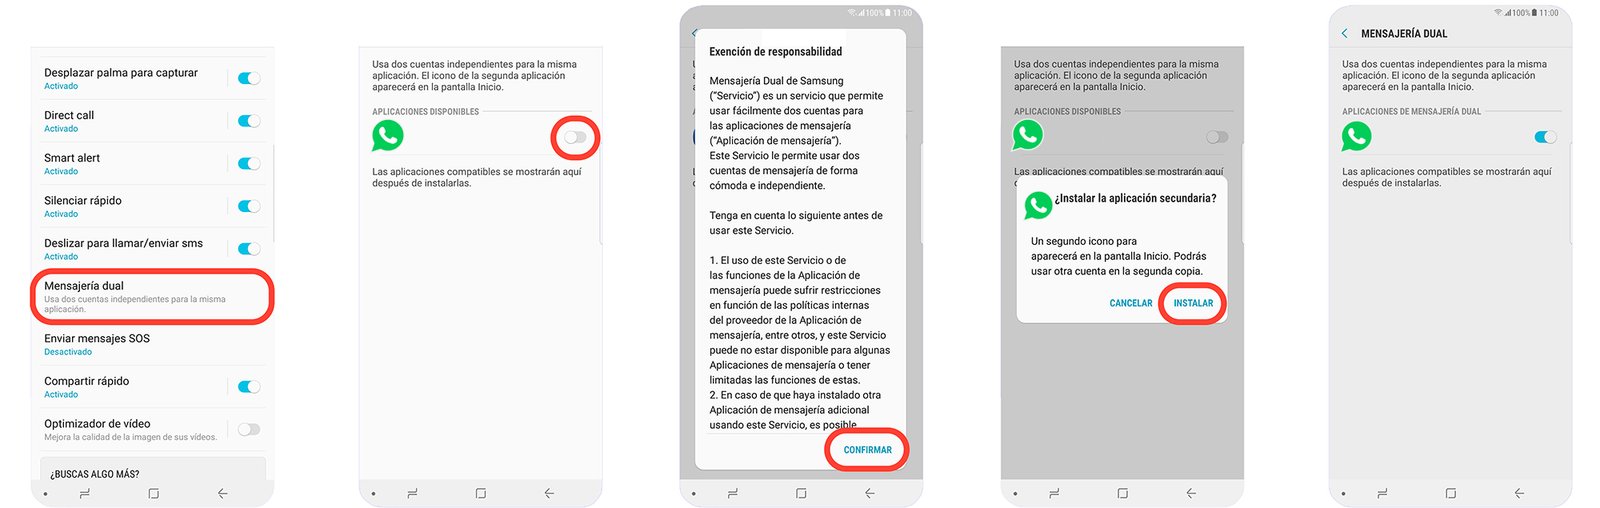 Comment utiliser WhatsApp avec deux comptes en même temps